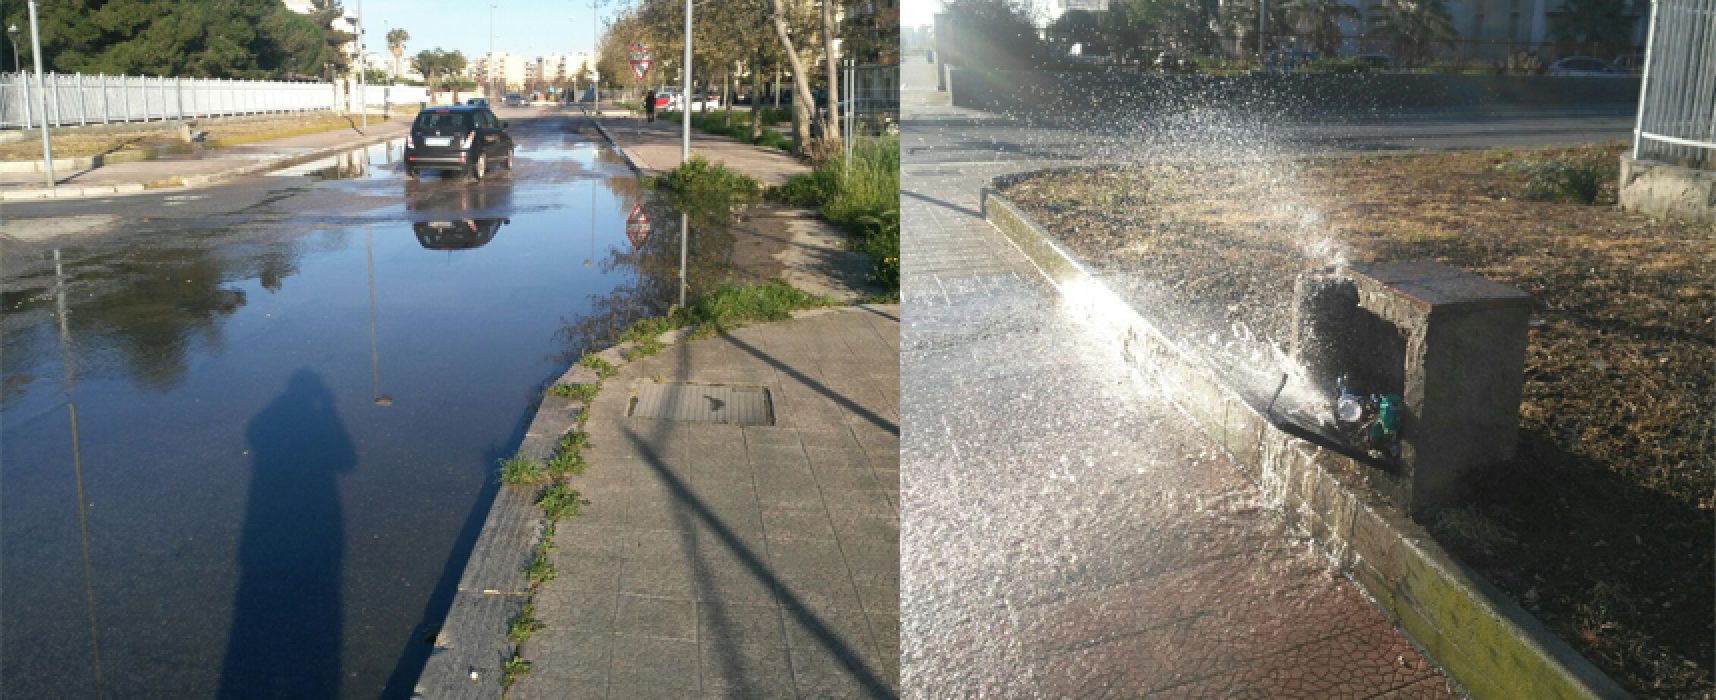 Centinaia di litri di acqua pubblica in strada nel quartiere Sant’Andrea, atto vandalico?